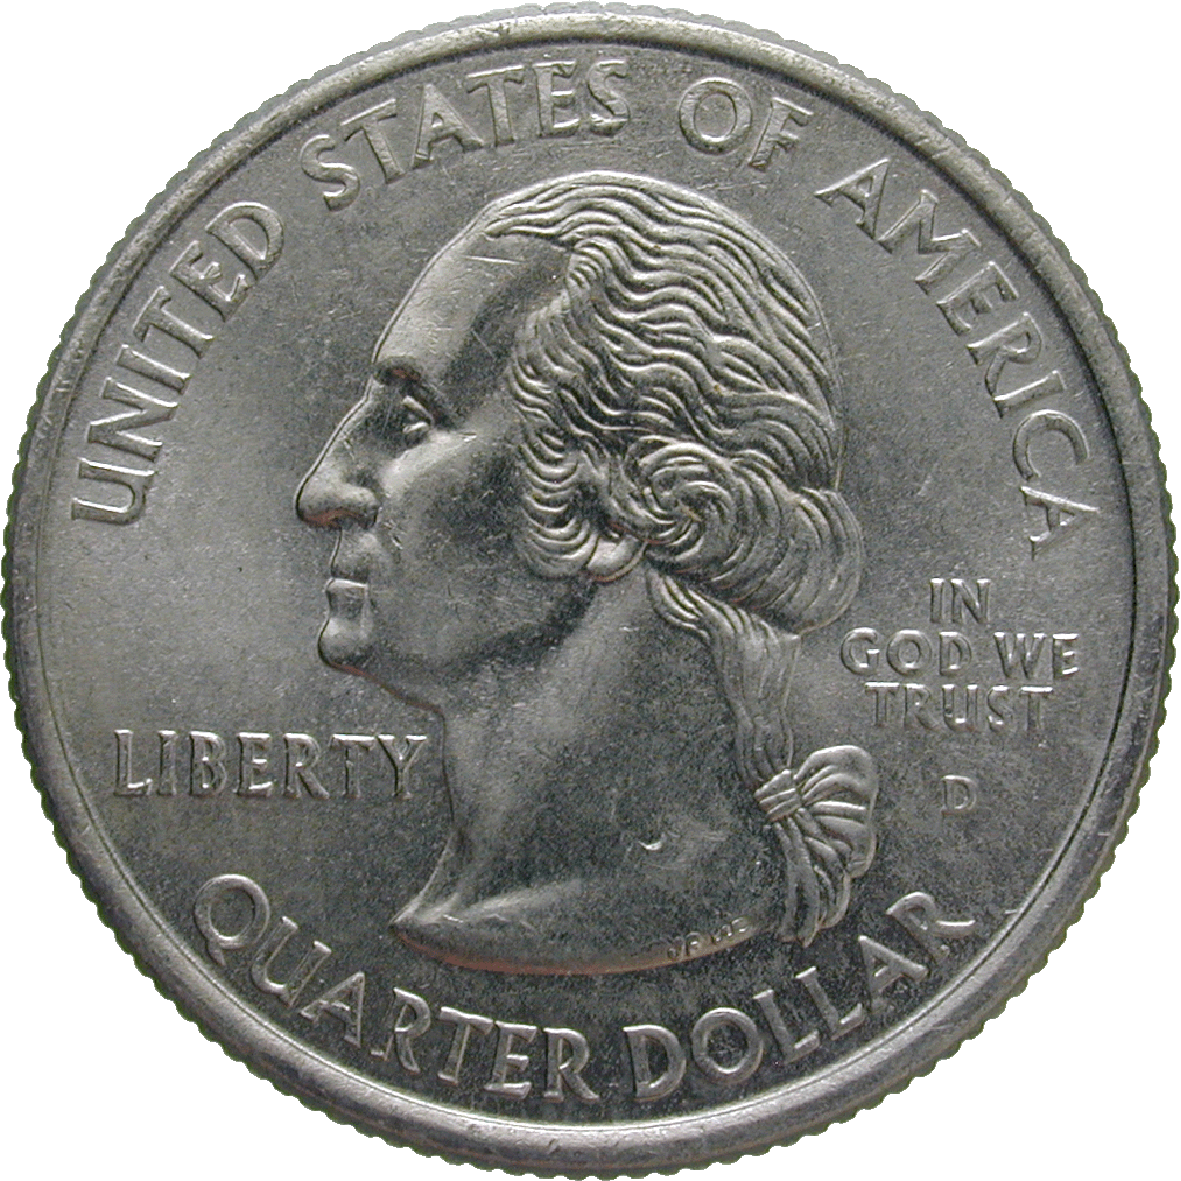 Vereinigte Staaten von Amerika, Quarter Dollar 2000 (obverse)